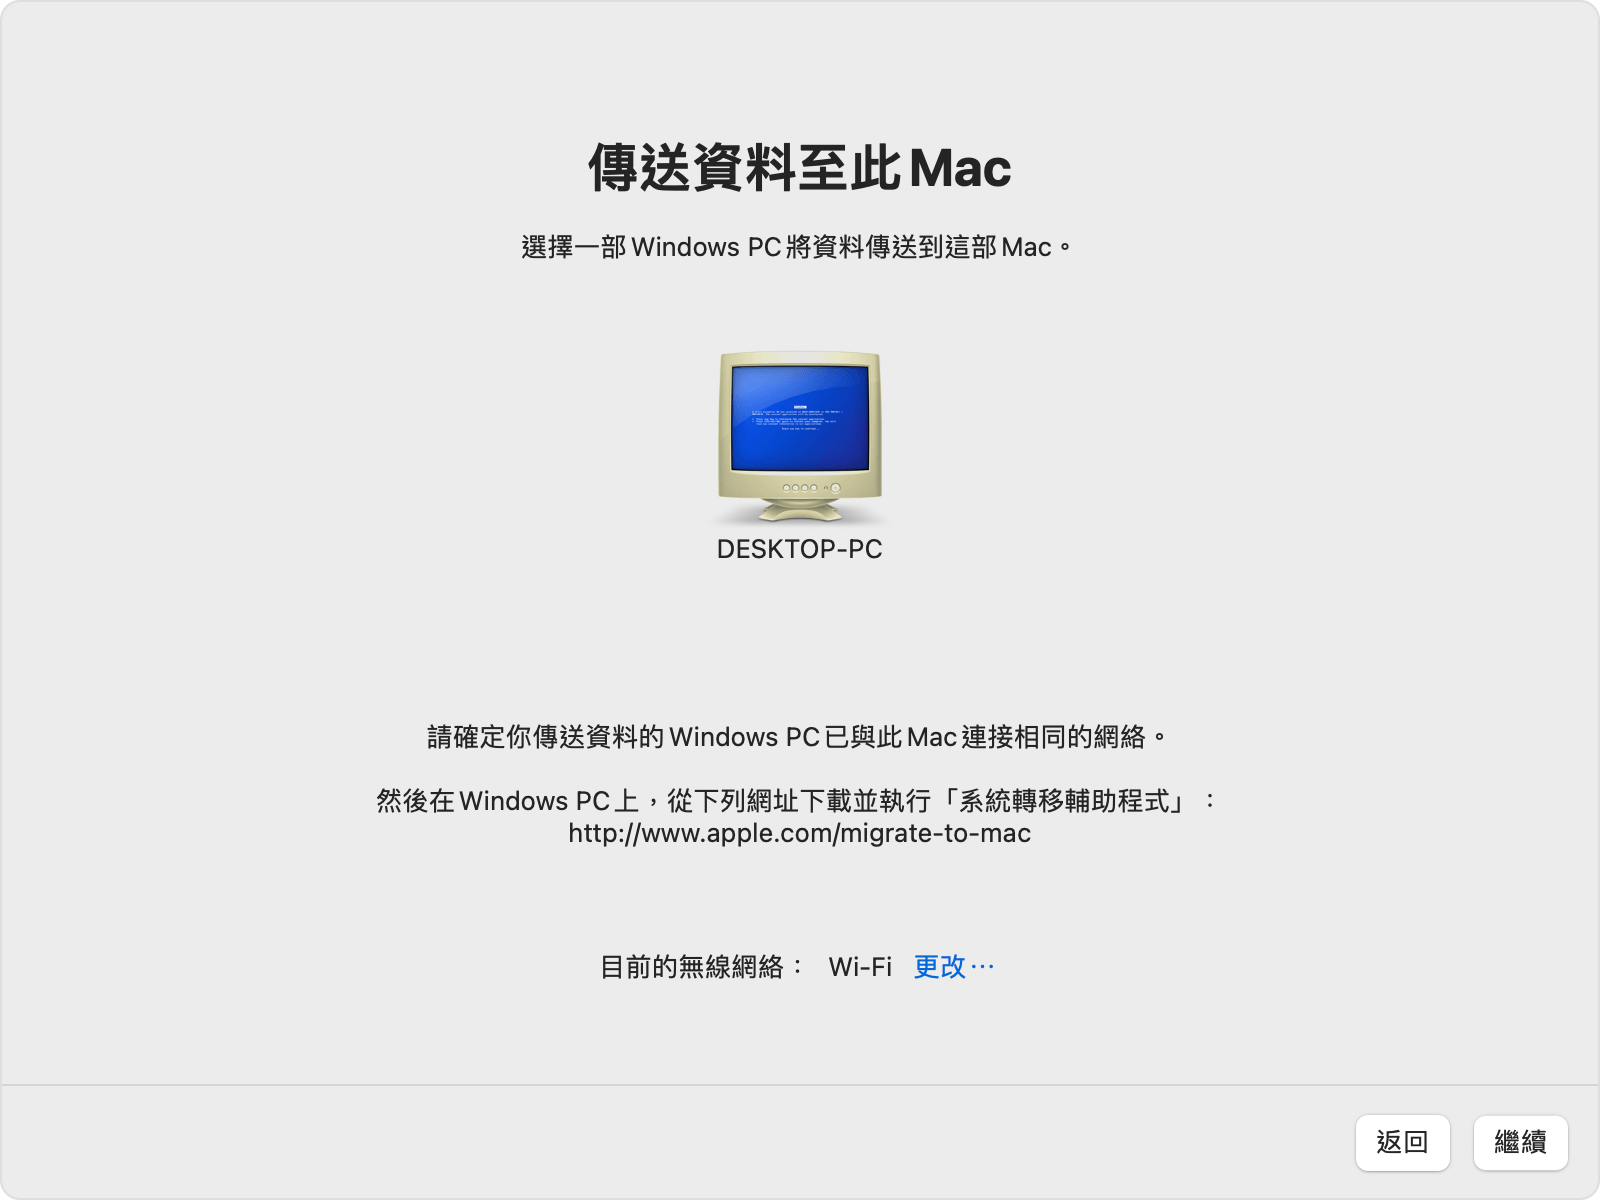 「系統轉移輔助程式」轉移至此 Mac